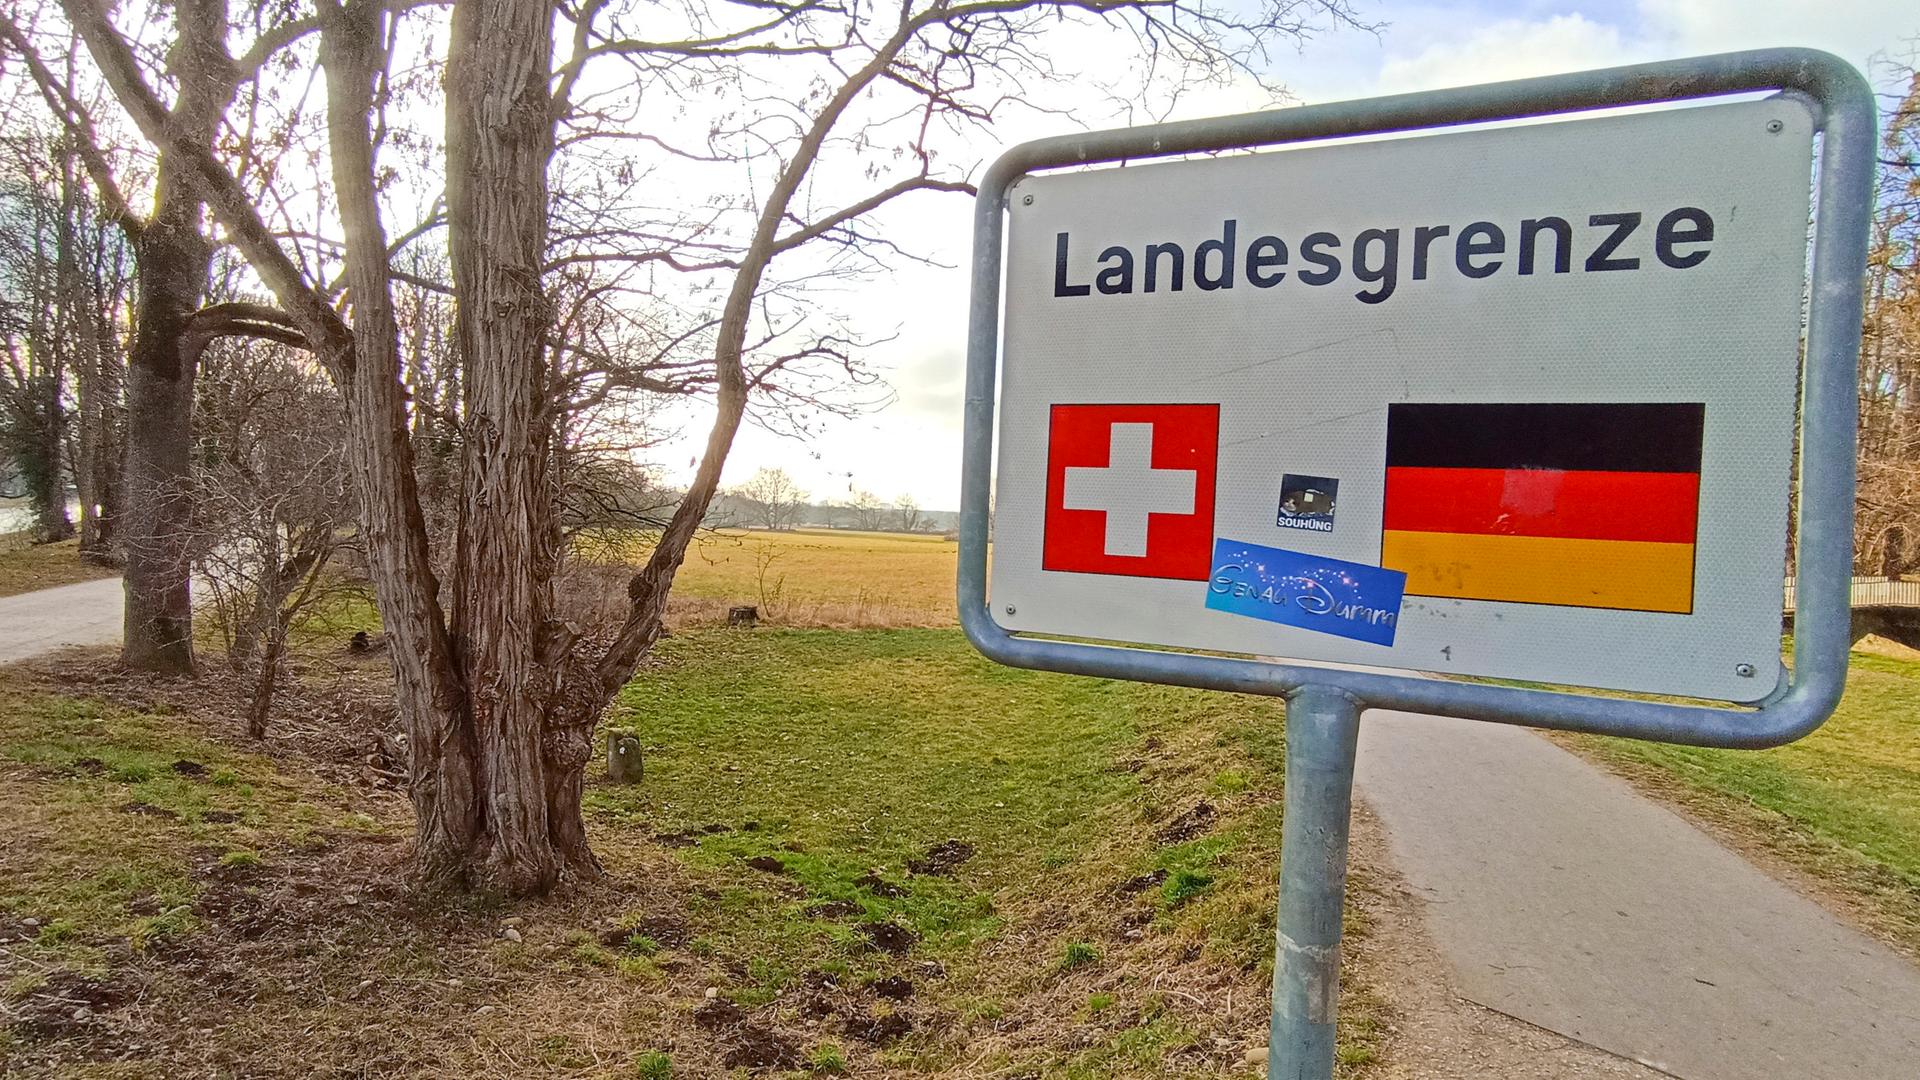 Das rechteckige weiße Schild mit dem Wort "Landesgrenze" und den Flaggensymbolen der Schweiz und Deutschlands steht an einem Feldweg vor kahlen Bäumen unter bewölktem Himmel.